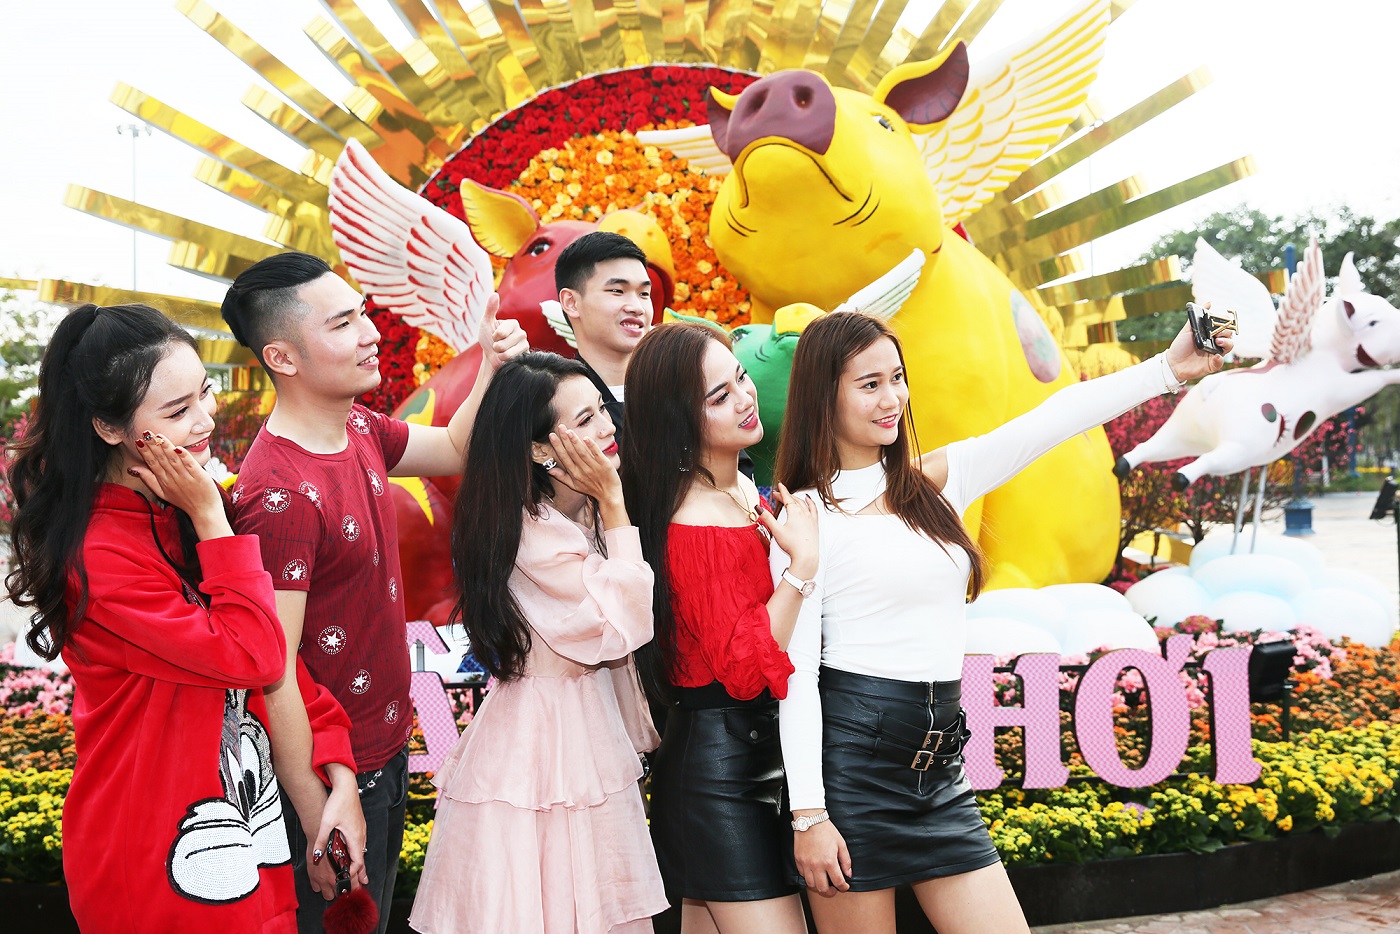 Vốn đã trở thành điểm đến vui chơi, giải trí và check-in hot nhất miền Bắc, Sun World Halong Complex dịp Tết Kỷ Hợi lại đốn tim du khách, đặc biệt là giới trẻ, với những đại cảnh, tiểu cảnh được thiết kế cầu kỳ, công phu trong Lễ hội hoa xuân “Heo vàng gõ cửa” tại khuôn viên công viên Dragon Park từ ngày 1/2/2019 đến 14/2/2019. 

Không chỉ đơn thuần là trang trí, lễ hội còn kể câu chuyện mùa xuân Hạ Long, Quảng Ninh với 4 chủ đề: Mùa xuân truyền thống, Xuân Quảng Ninh tươi đẹp, Tết Xuân Hoài Niệm, Xuân Hạ Long rực rỡ. Lang thang trong khuôn viên đó cả ngày trời bạn sẽ muốn lang thang không biết mệt mỏi ở nơi này.